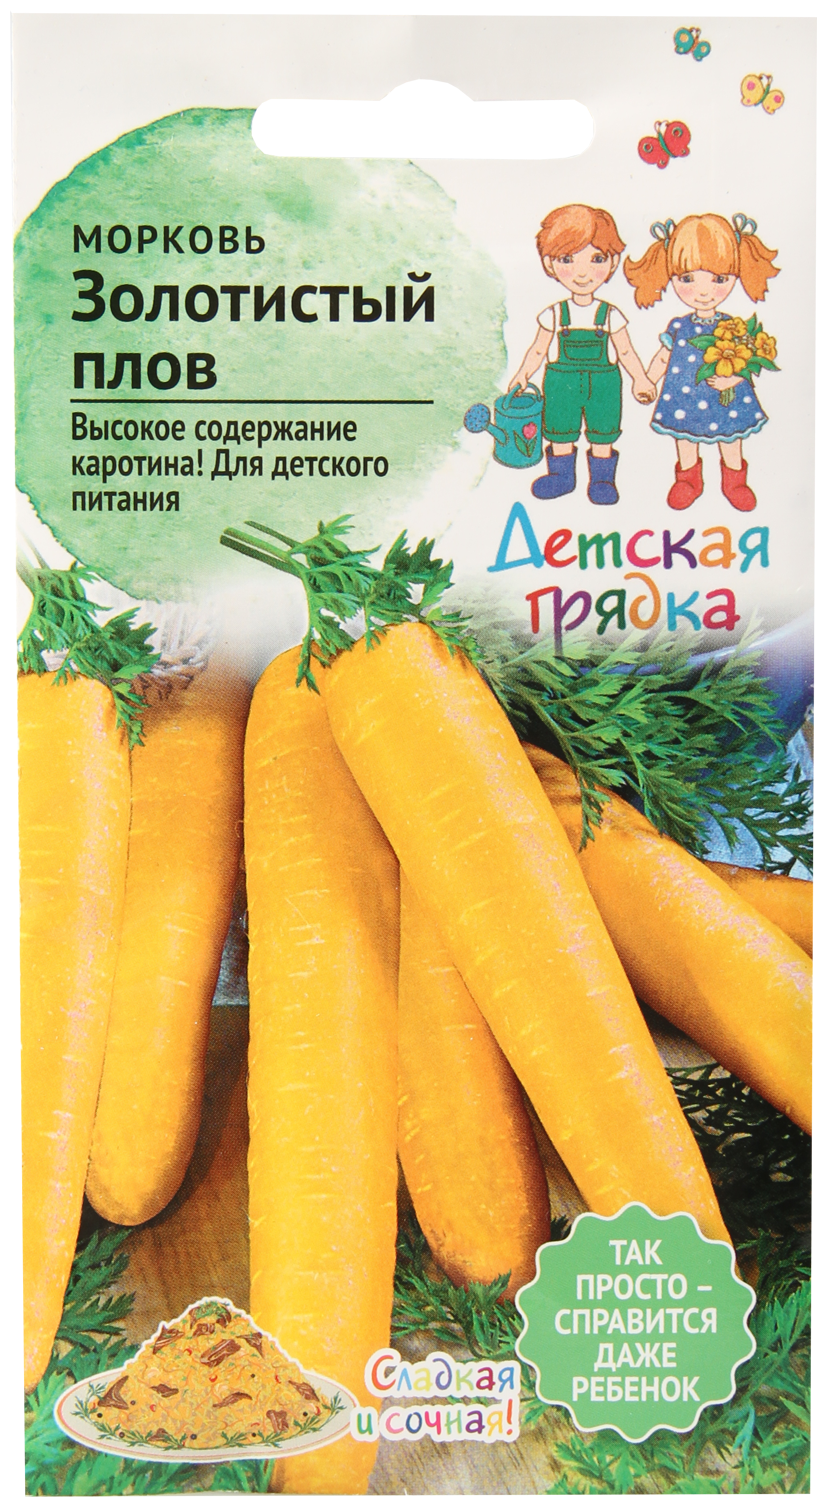 Морковь Золотистый плов 03 г Детская грядка / семена моркови для посадки / витаминная для сада огорода / семена овощей / овощи для открытого грунта